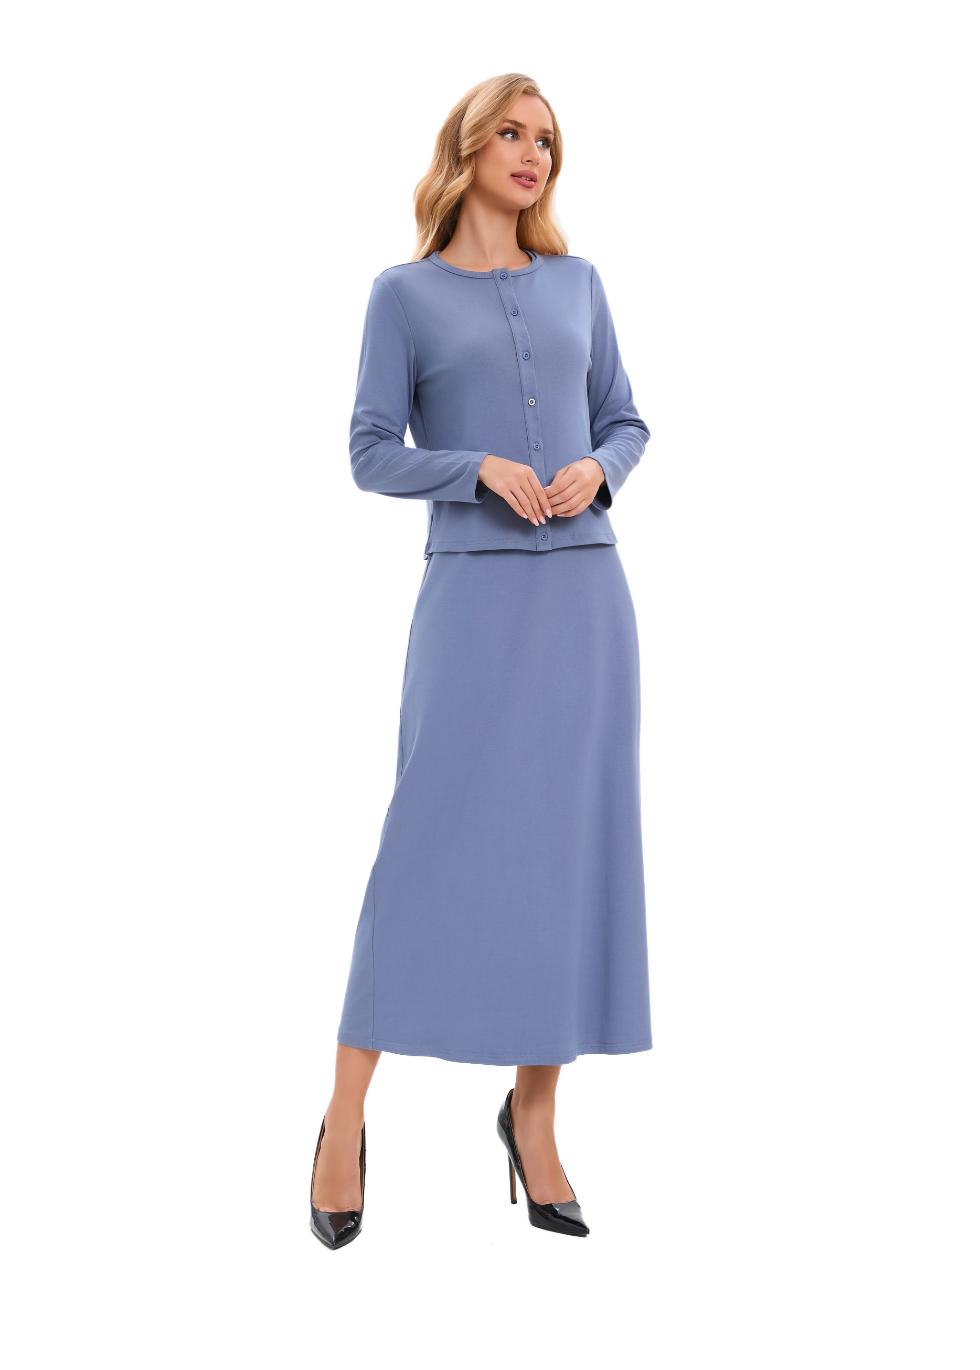 Pastel Blue Sheath Dress & Cardigan Matching Outfit Set